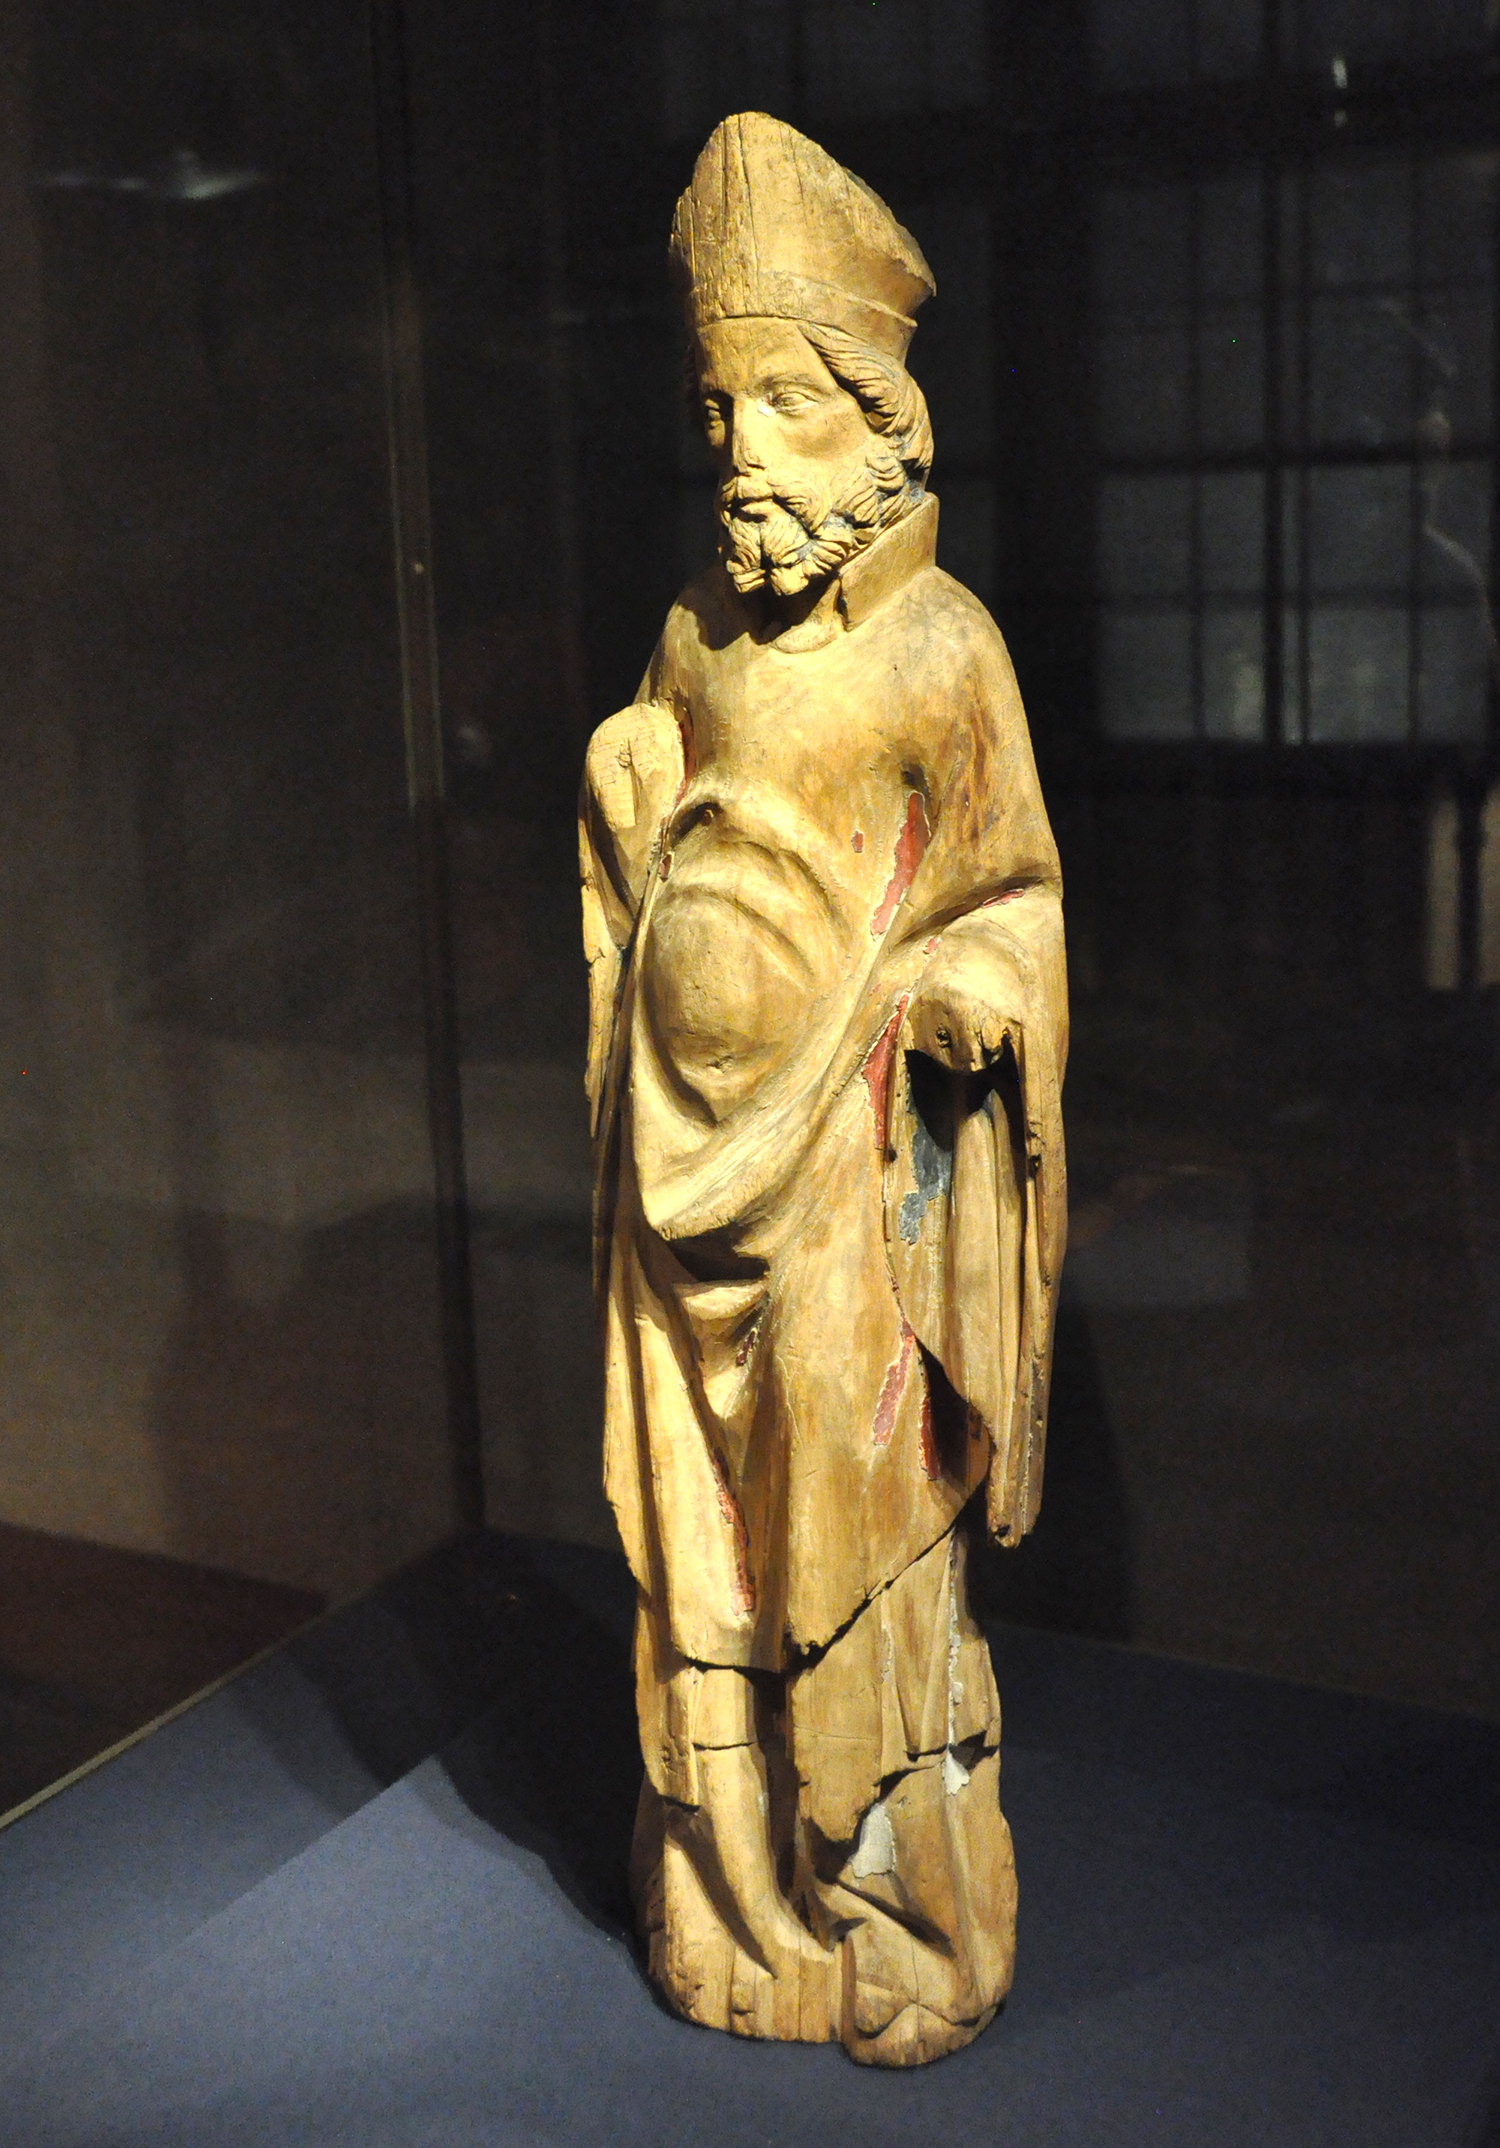 Puinen miestä esittävä patsas, jossa värikkään maalin jäänteitä uurteissa